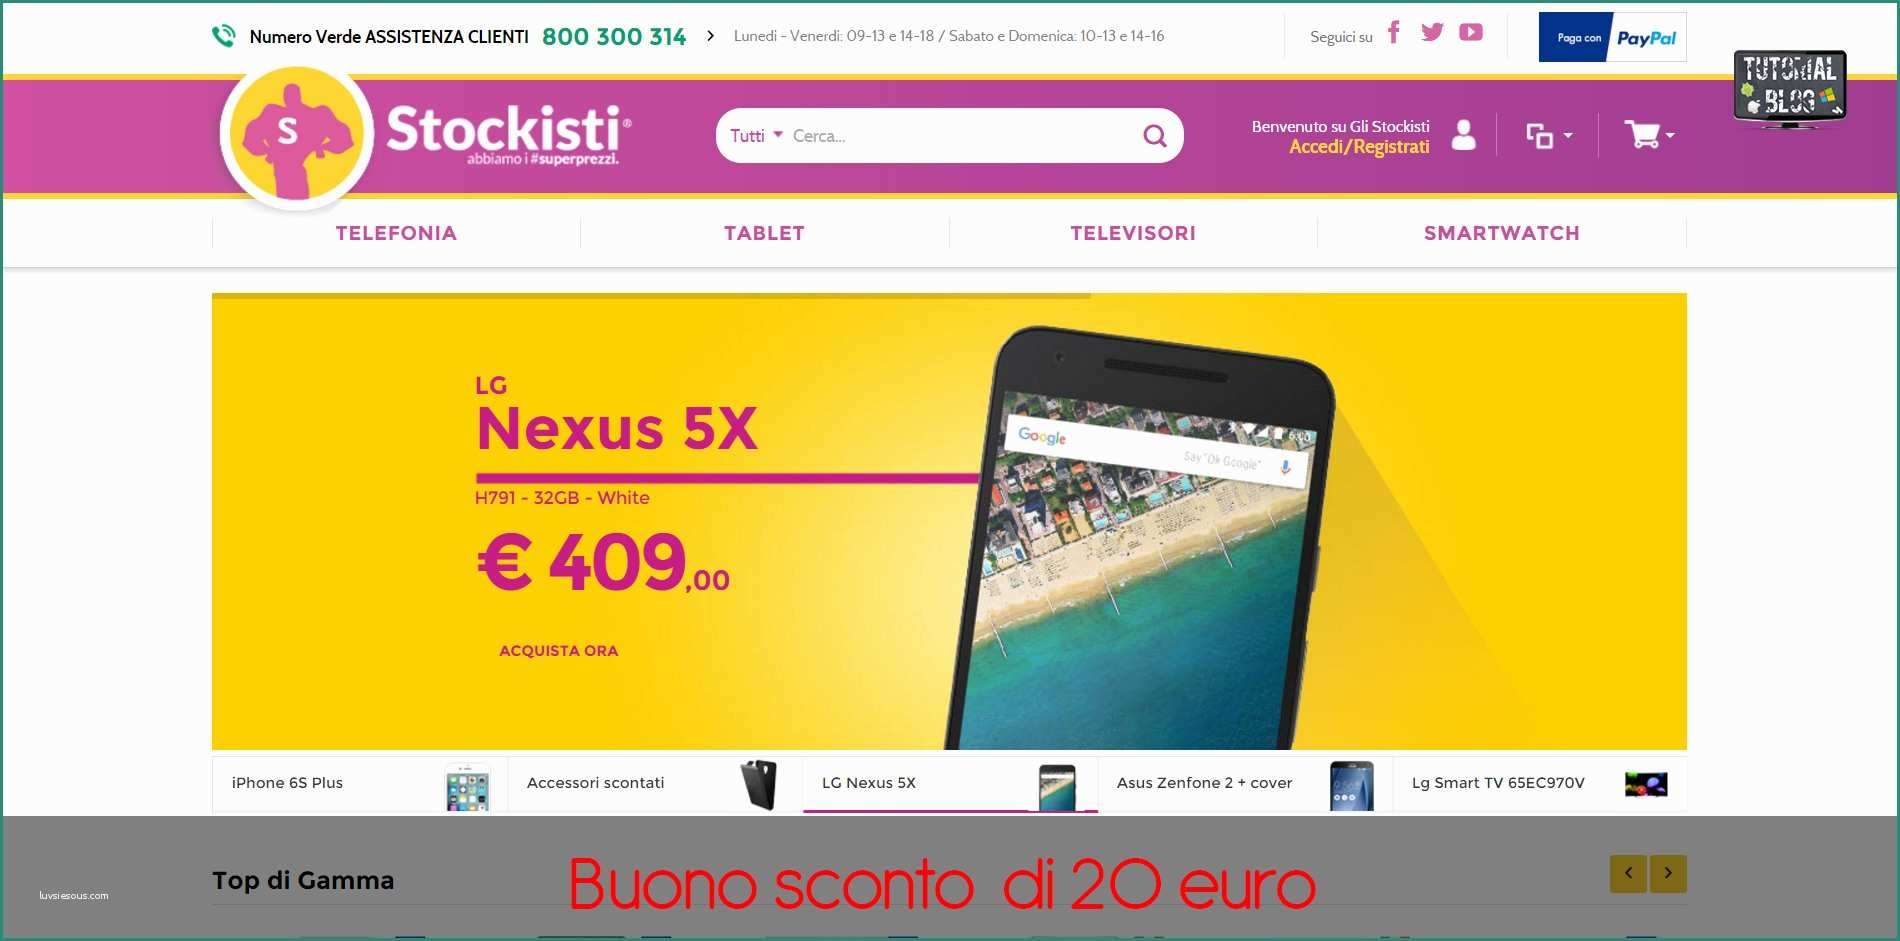 Nexus X Gli Stockisti E Gli Stockisti Buono Sconto Di 20 Euro Ecco E